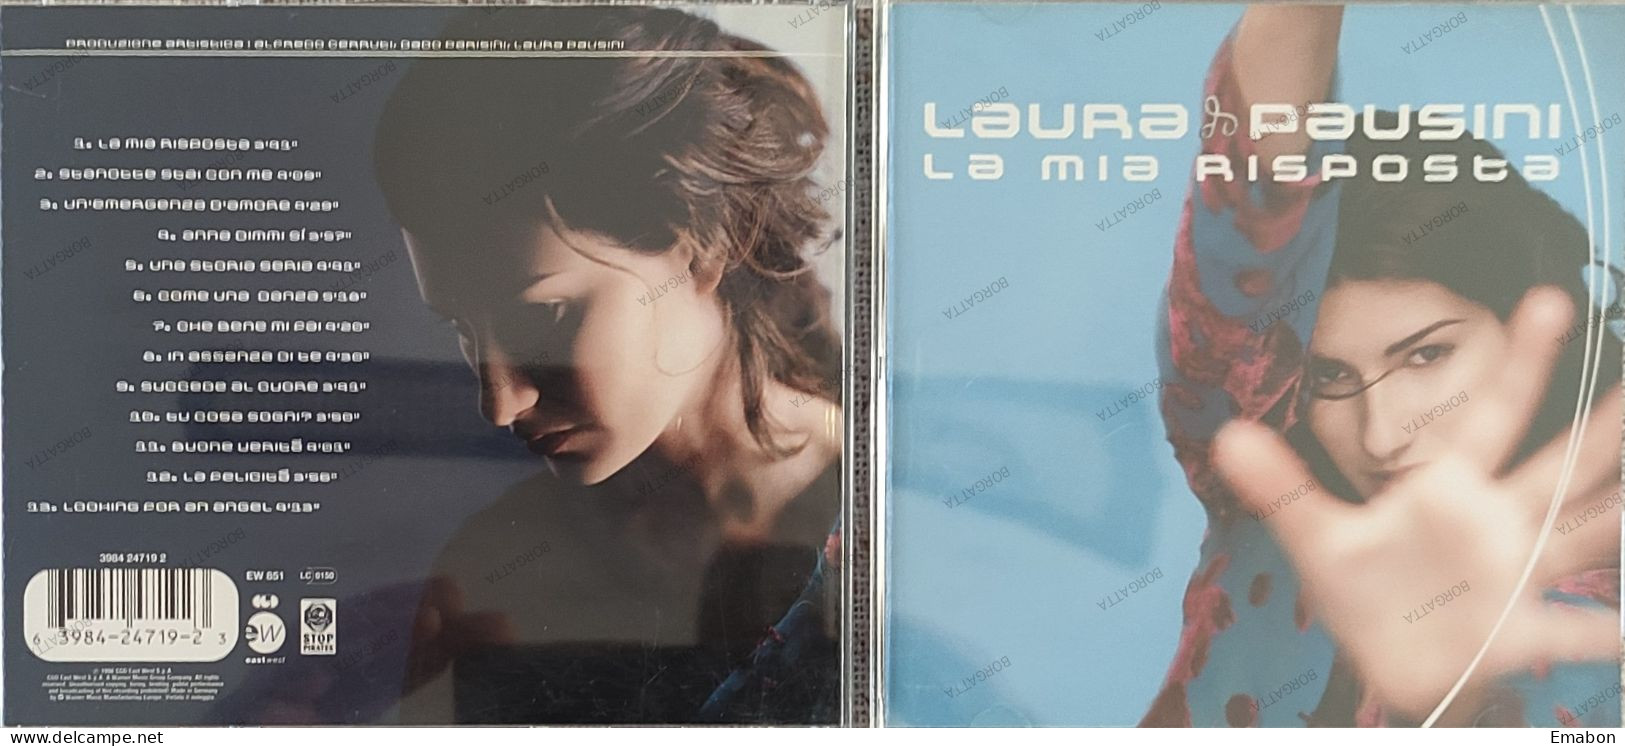 BORGATTA - ITALIANA  - Cd LAURA PAUSINI - LA MIA RISPOSTA  - CGD EAST 1998 -  USATO In Buono Stato - Sonstige - Italienische Musik